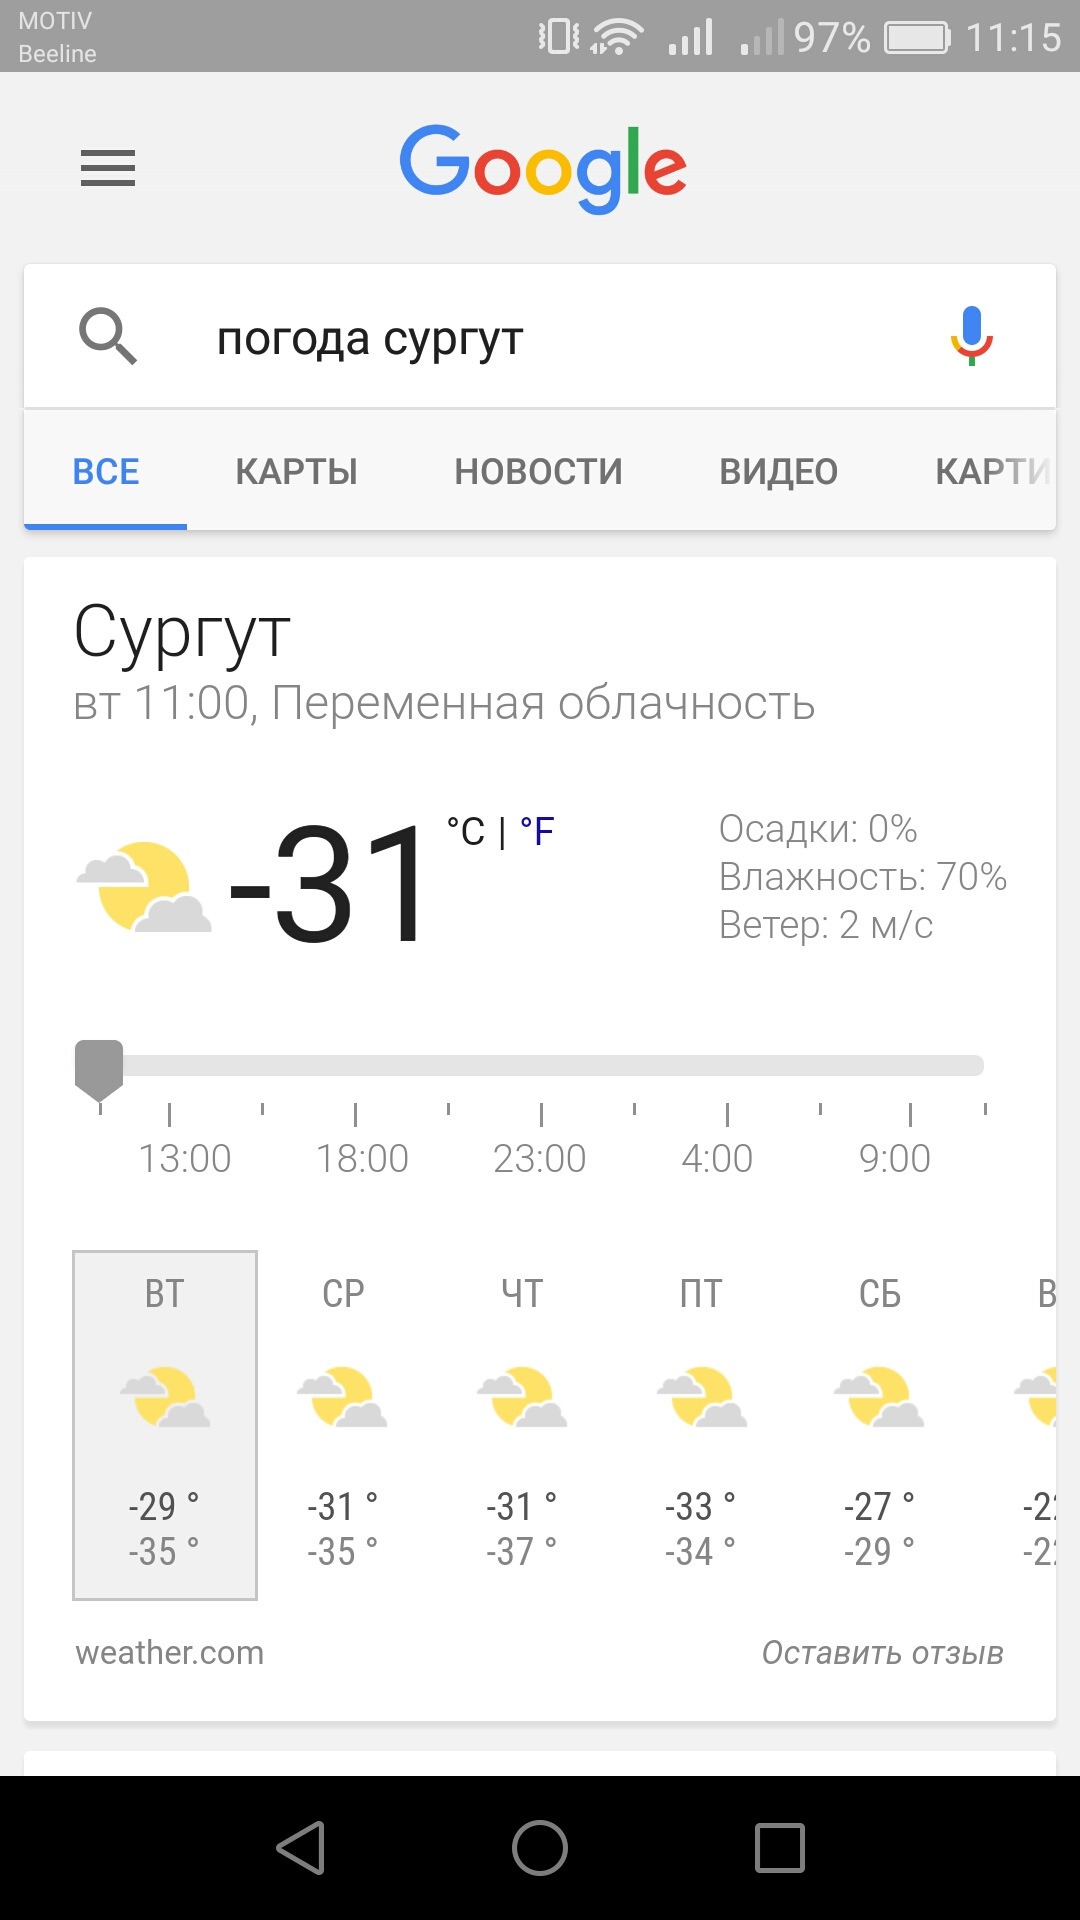 Прогноз в душанбе сегодня. Пагода. Погода в Душанбе. П̠о̠г̠о̠д̠а̠ В̠ Д̠у̠ш̠а̠н̠б̠е̠. Погода на завтра.